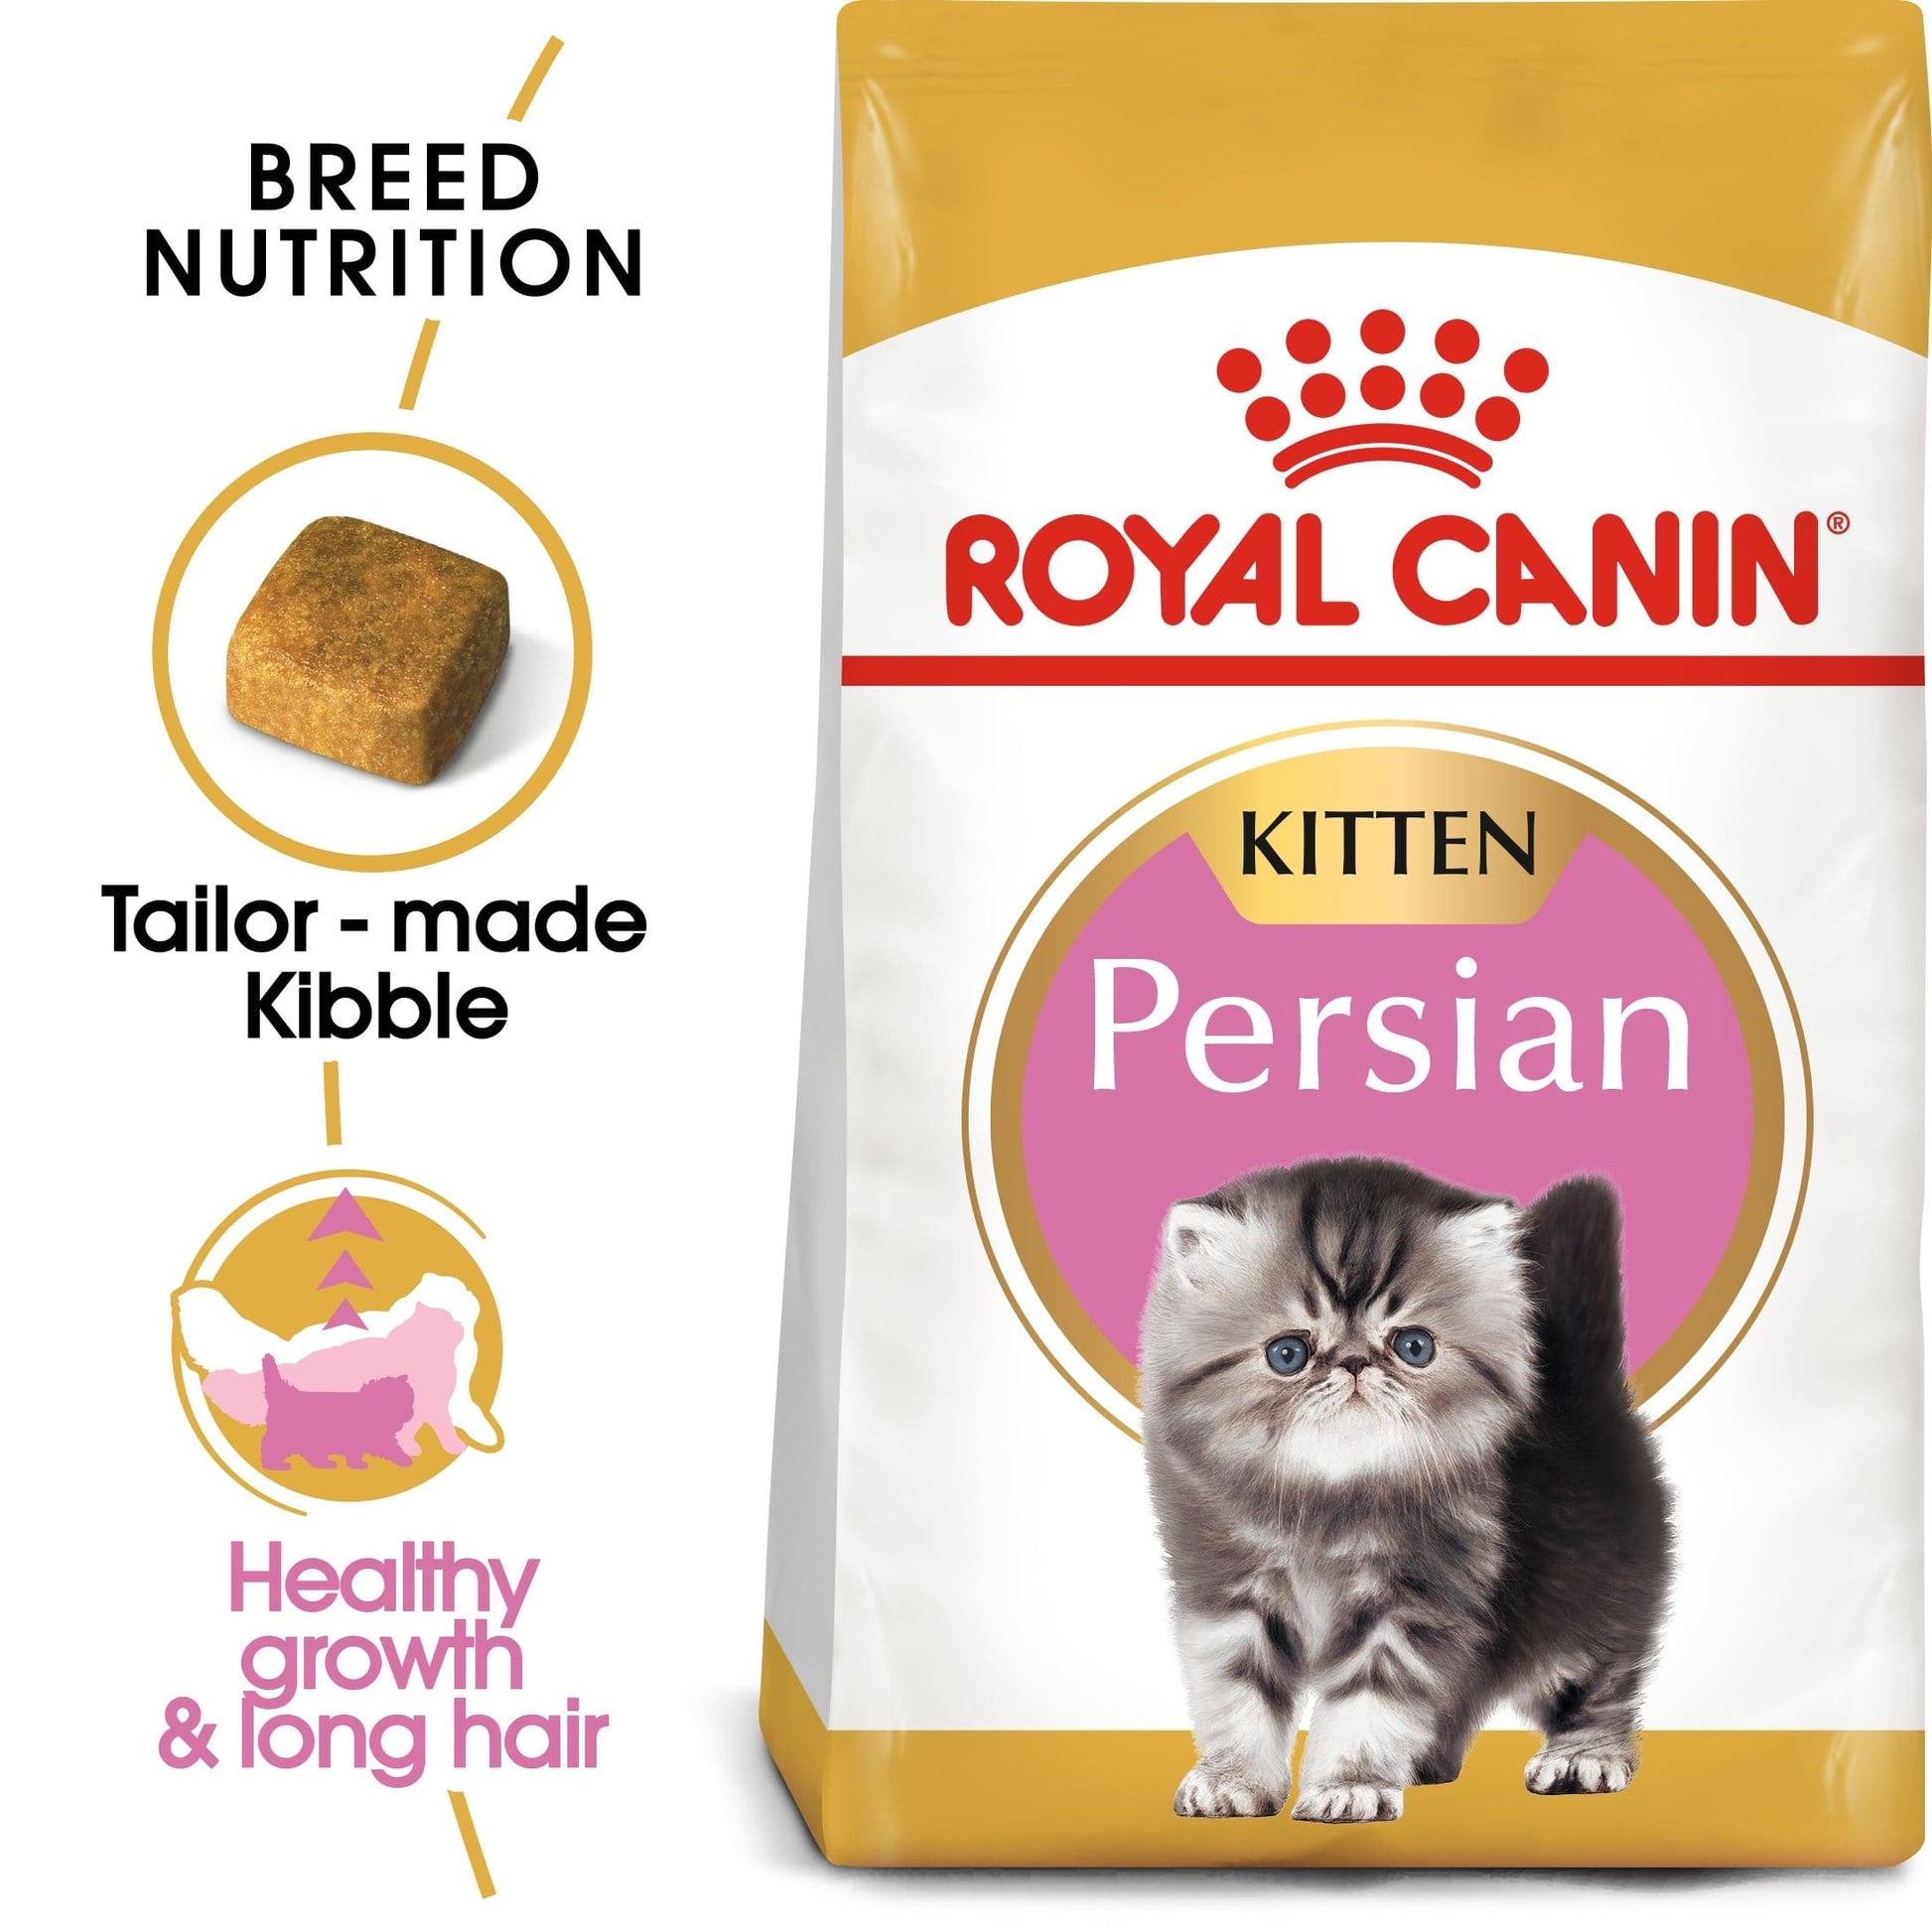 Royal Canin Feline Breed Nutrition Persian Kitten